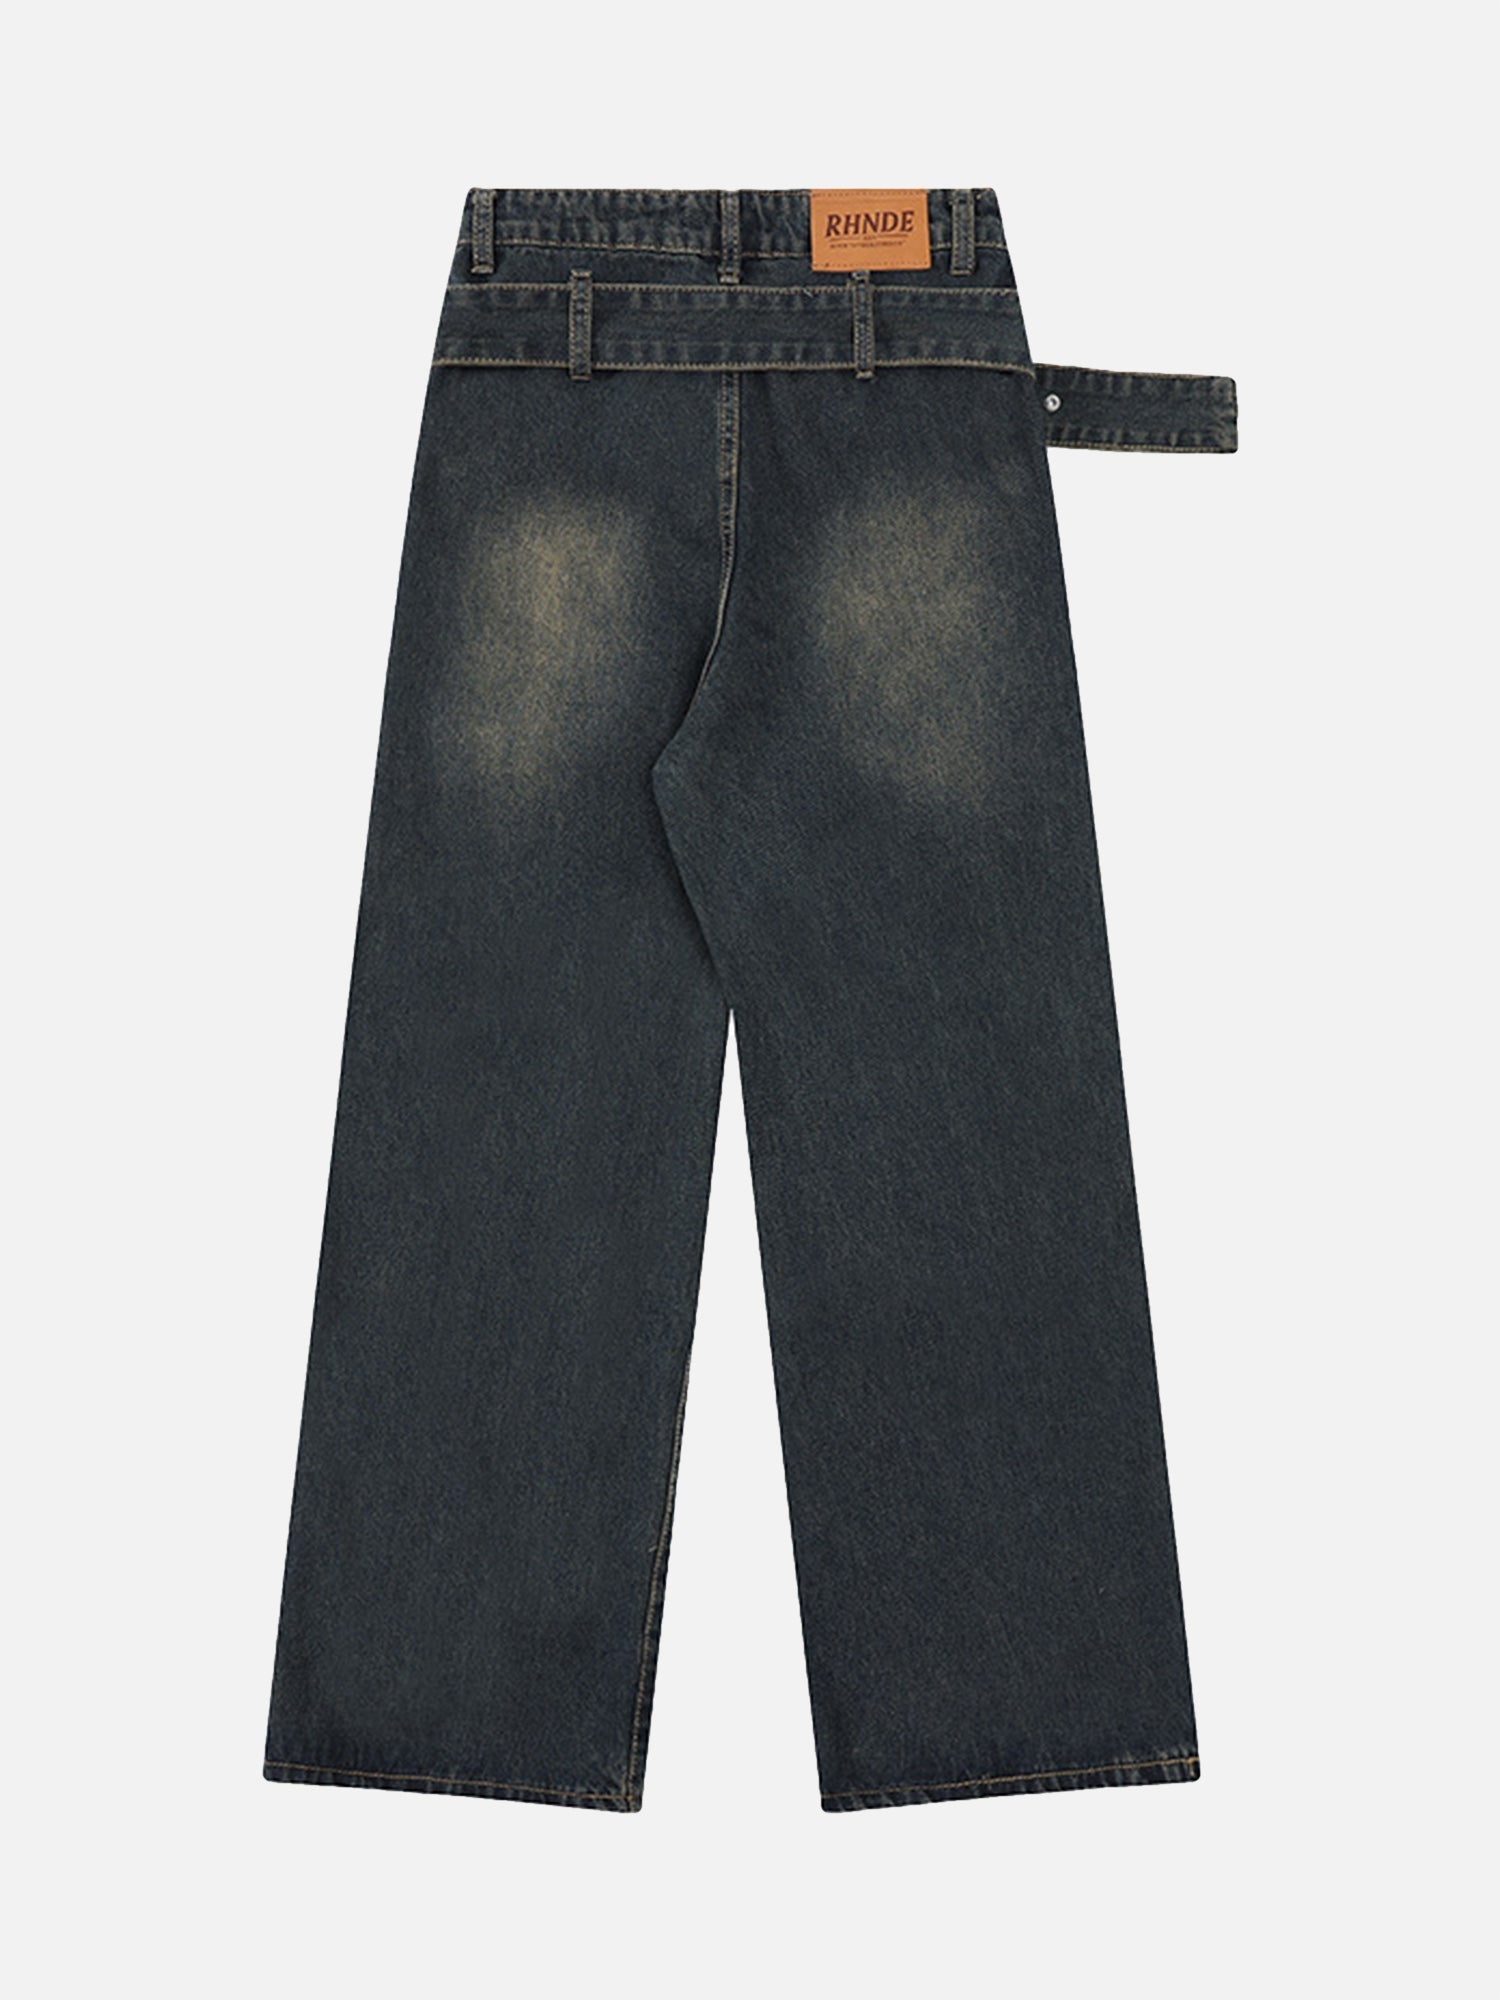 High Street Vintage Washed Star Rivet Jeans